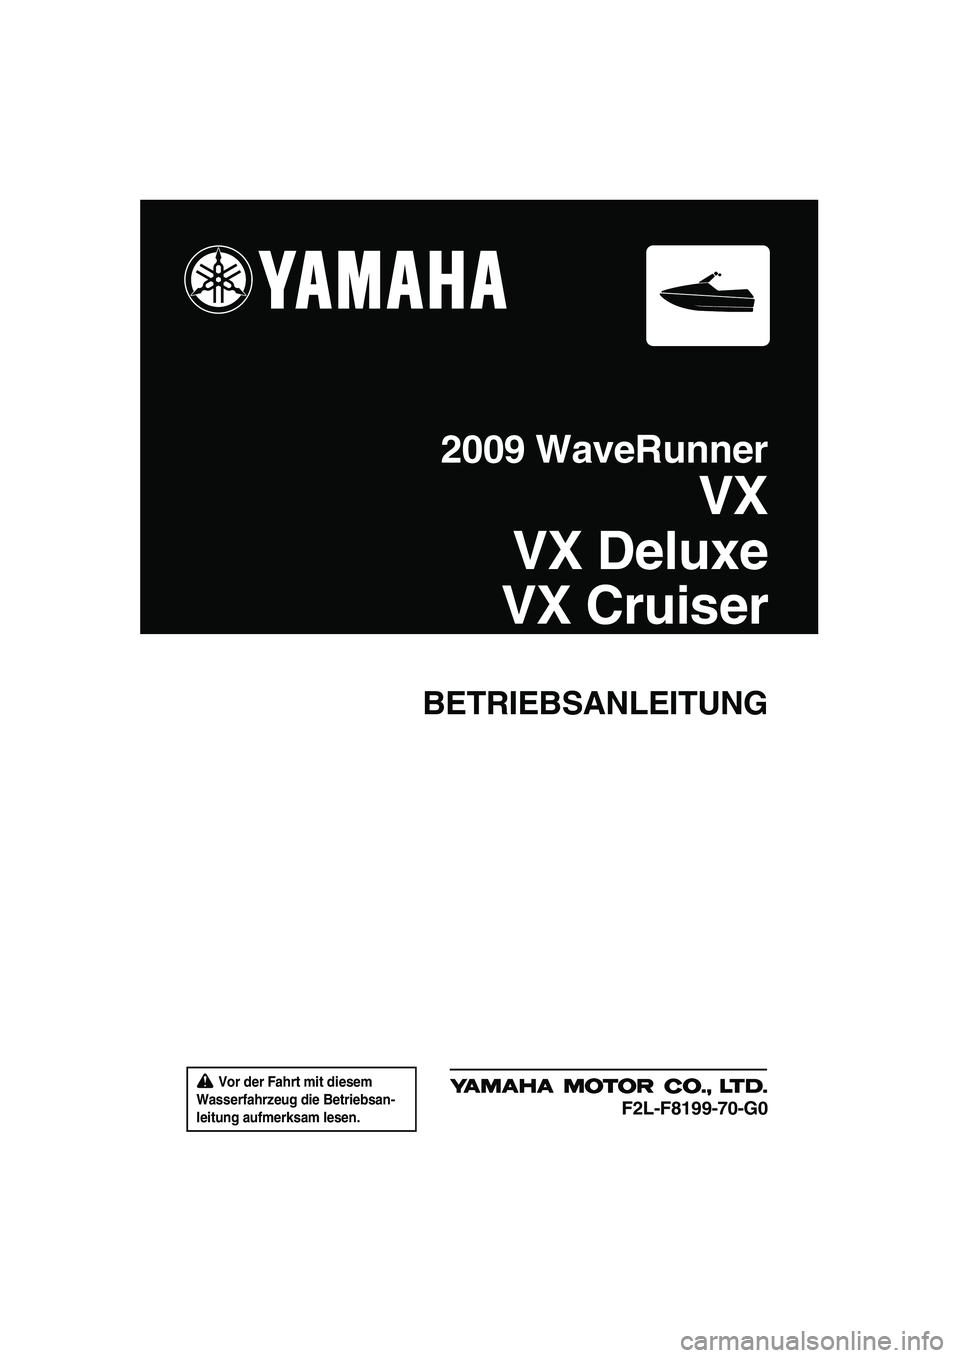 YAMAHA VX 2009  Betriebsanleitungen (in German)  Vor der Fahrt mit diesem 
Wasserfahrzeug die Betriebsan-
leitung aufmerksam lesen.
BETRIEBSANLEITUNG
2009 WaveRunner
VX
VX Deluxe
VX Cruiser
F2L-F8199-70-G0
UF2L70G0.book  Page 1  Tuesday, June 24, 2